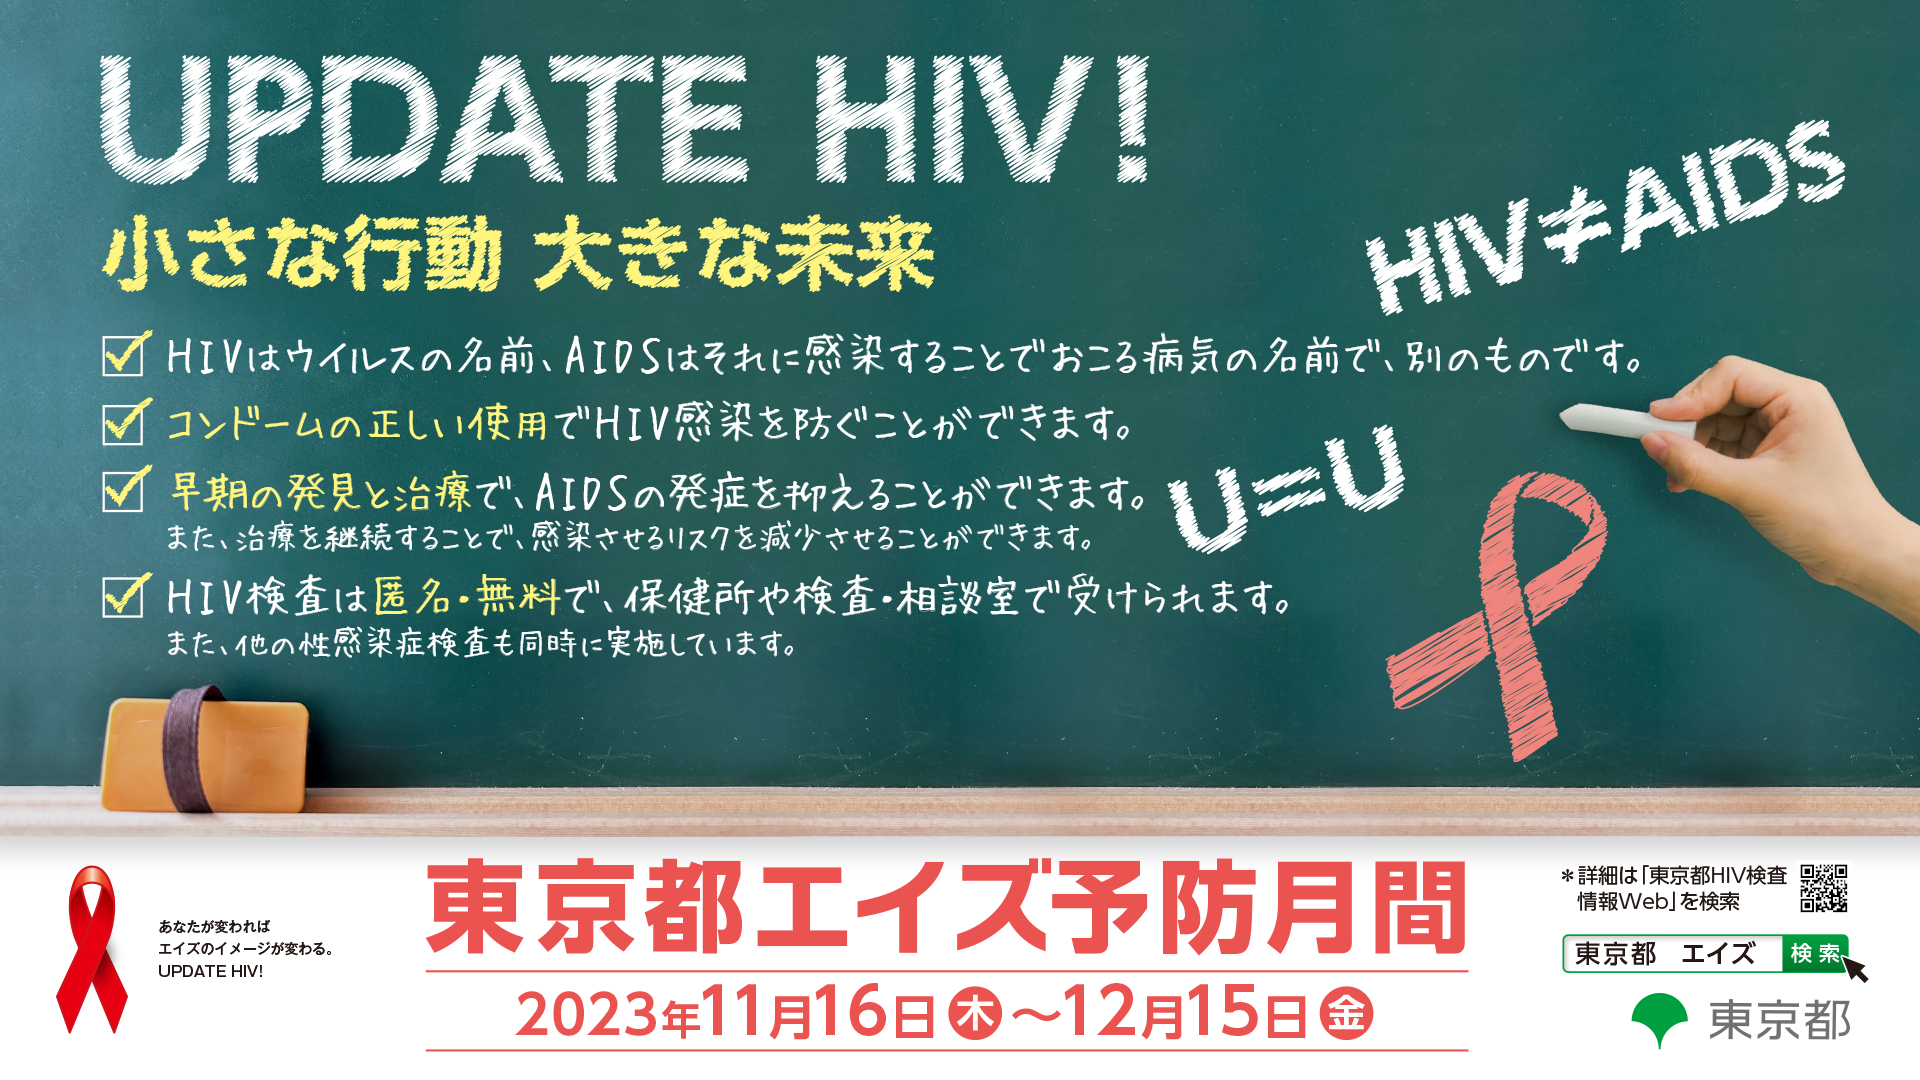 知って、学んで、行動する - 東京都エイズ予防月間 -